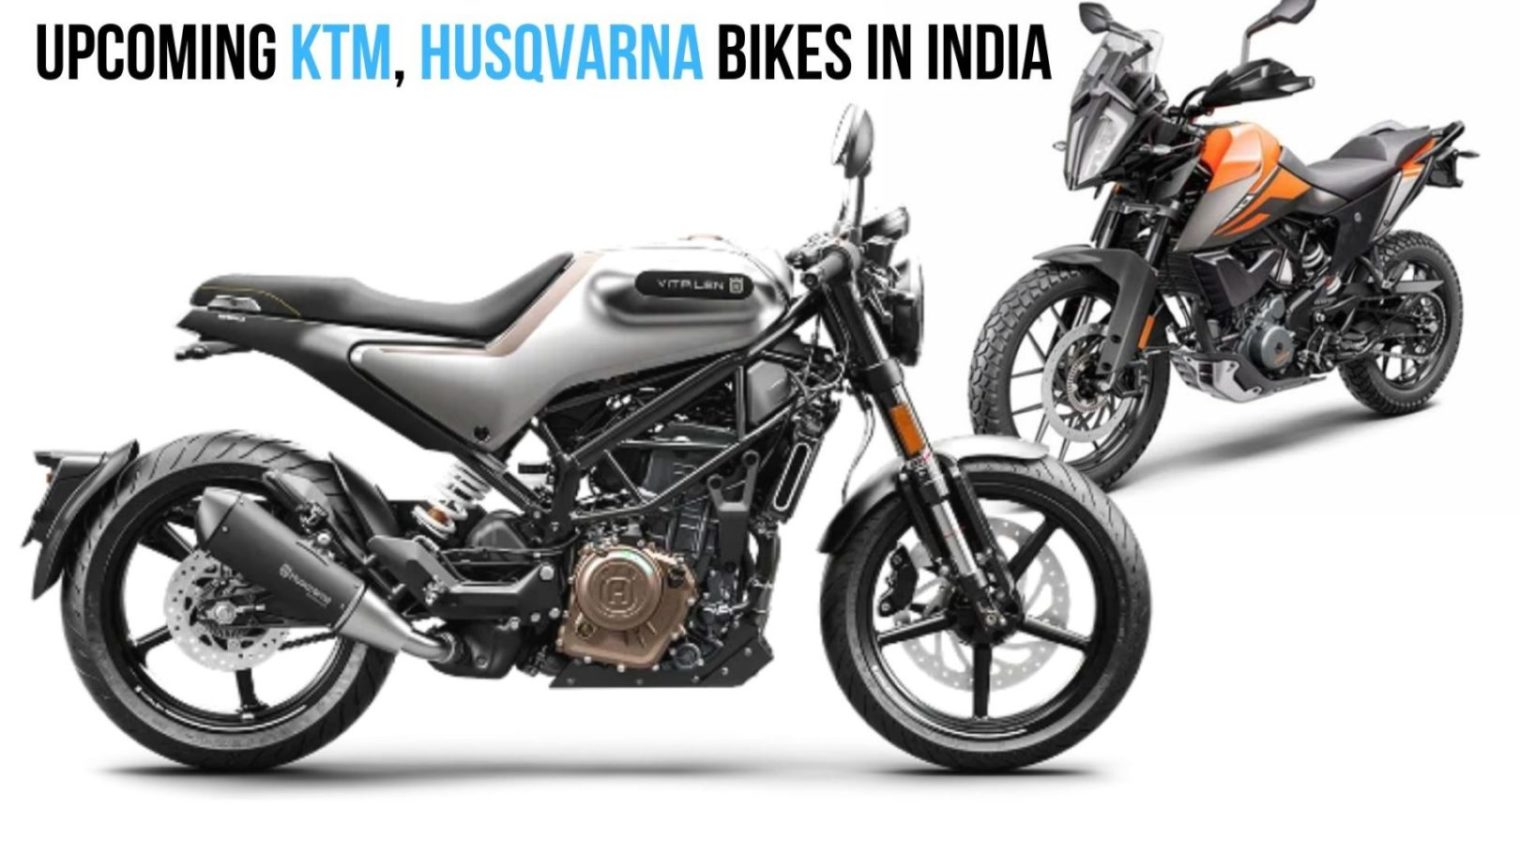 5 Upcoming Ktm And Husqvarna Bikes In India In 2020